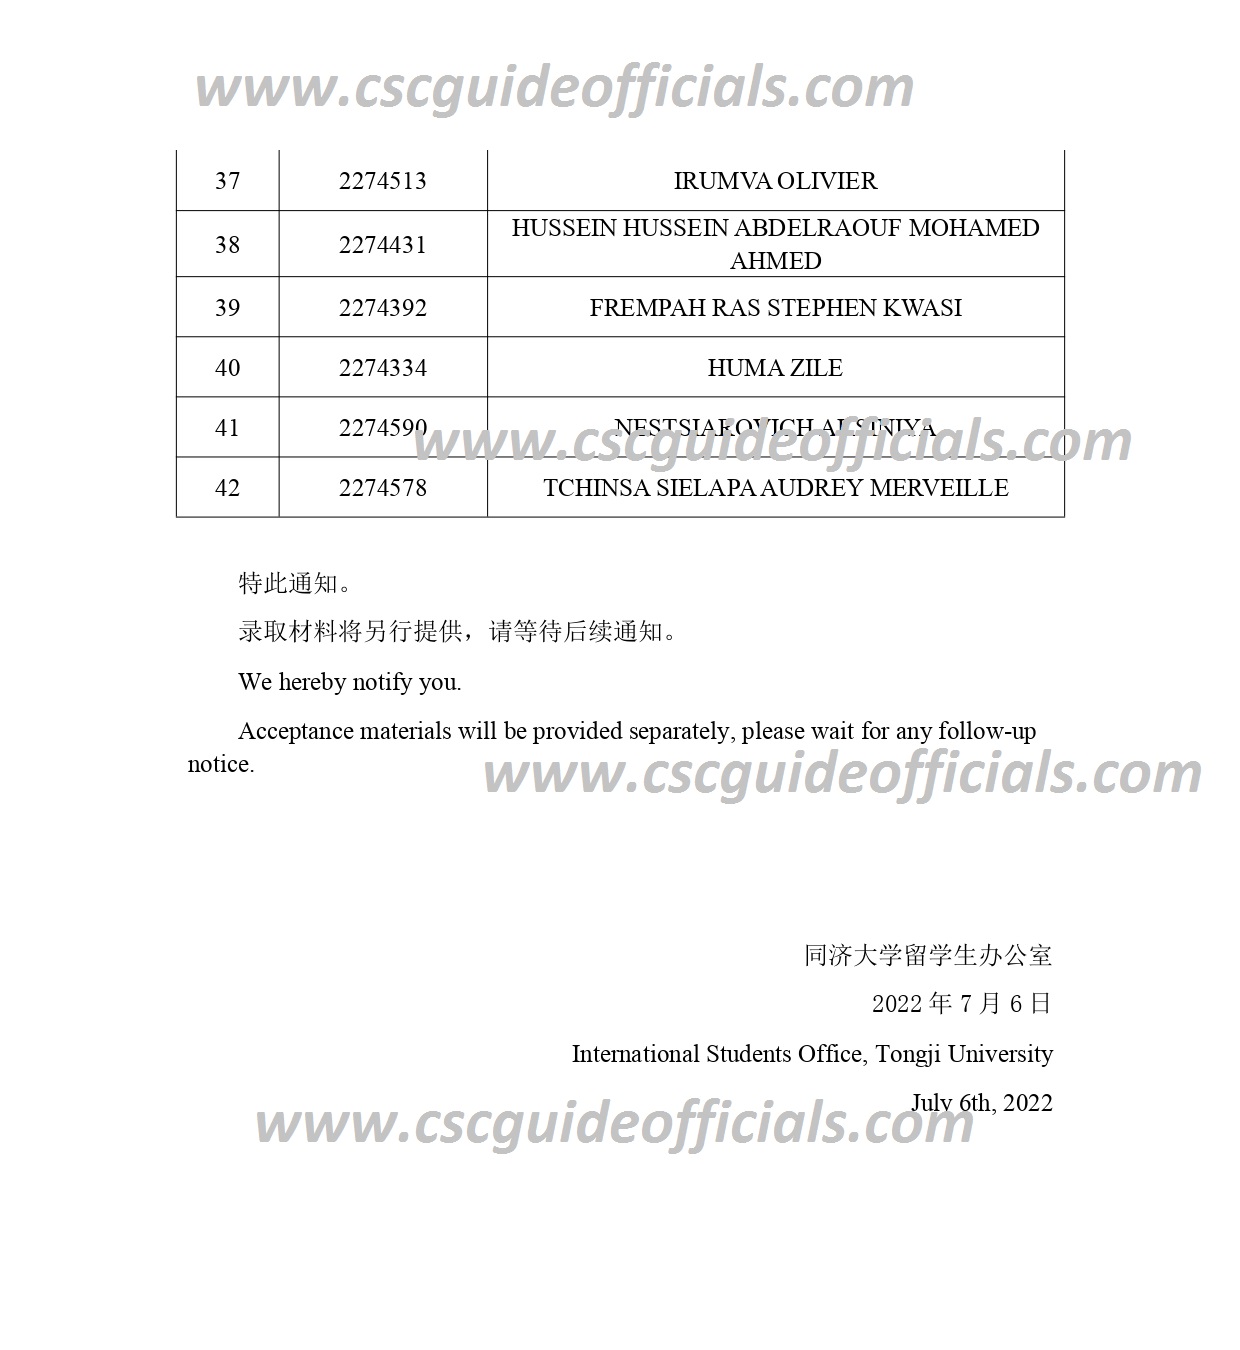 tongji university csc scholarship result 2022-2023